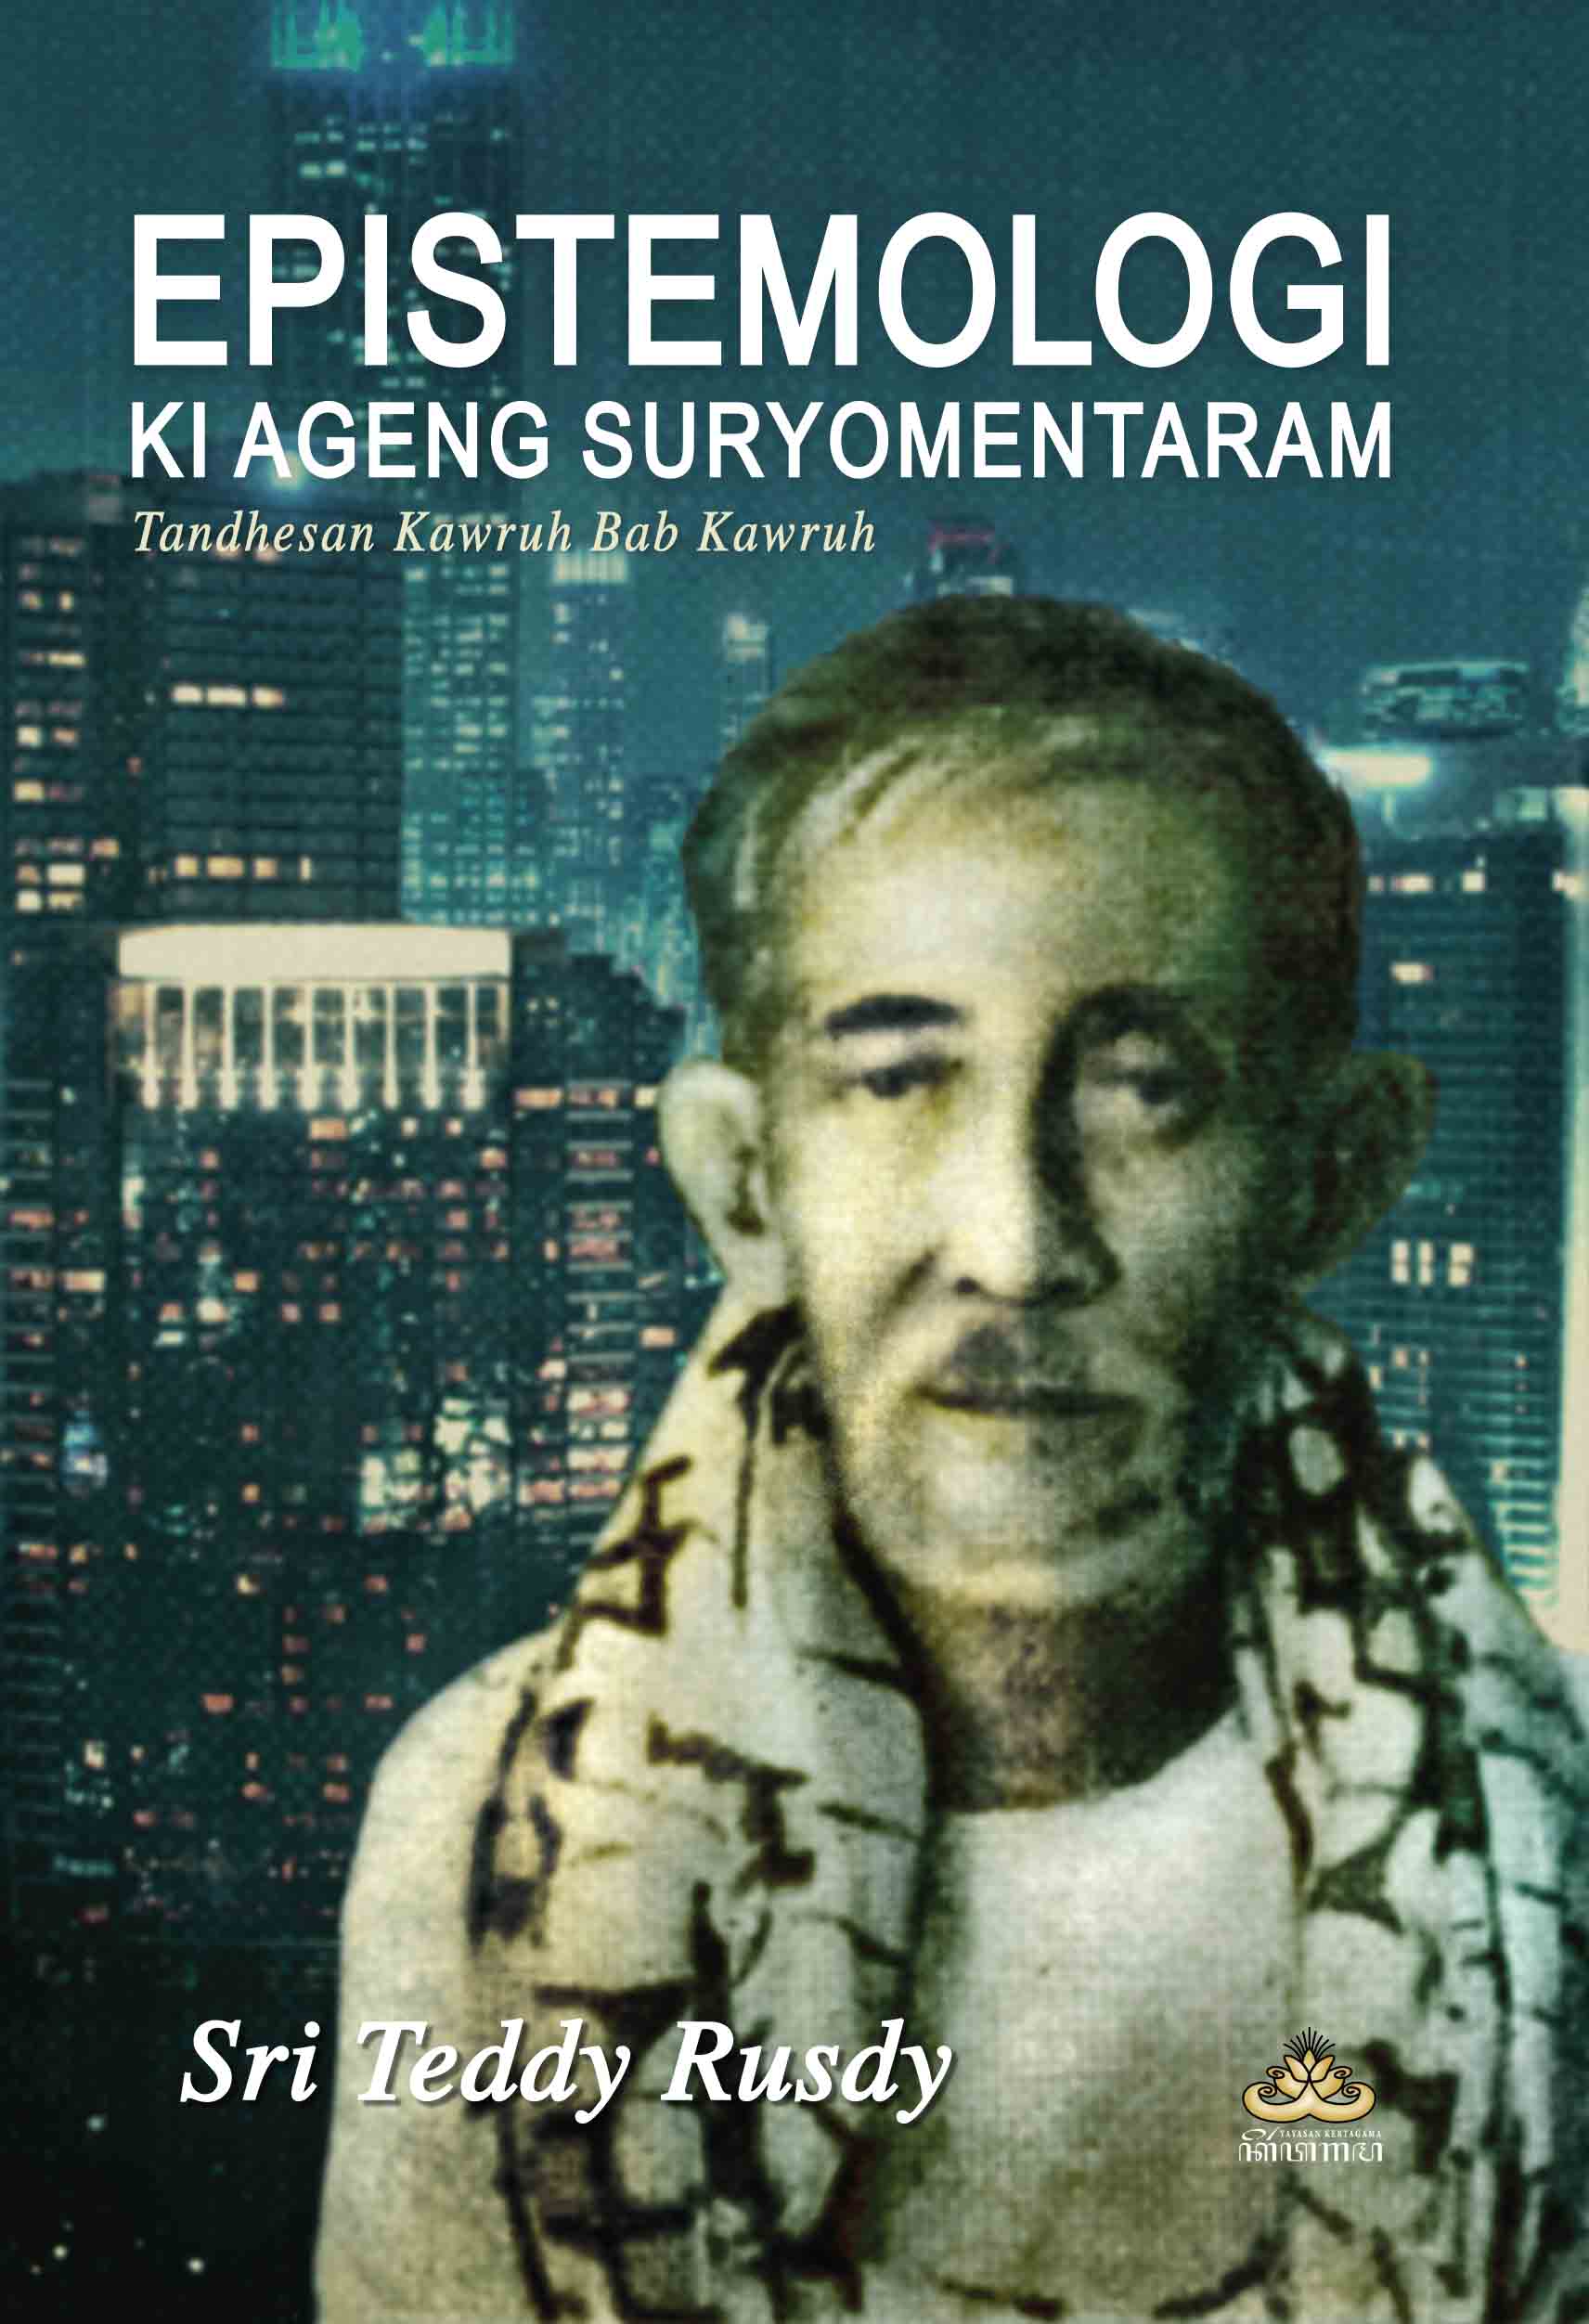 Epistemologi Ki Ageng Suryomentaram: Tandhesan Kawruh Bab Kawruh